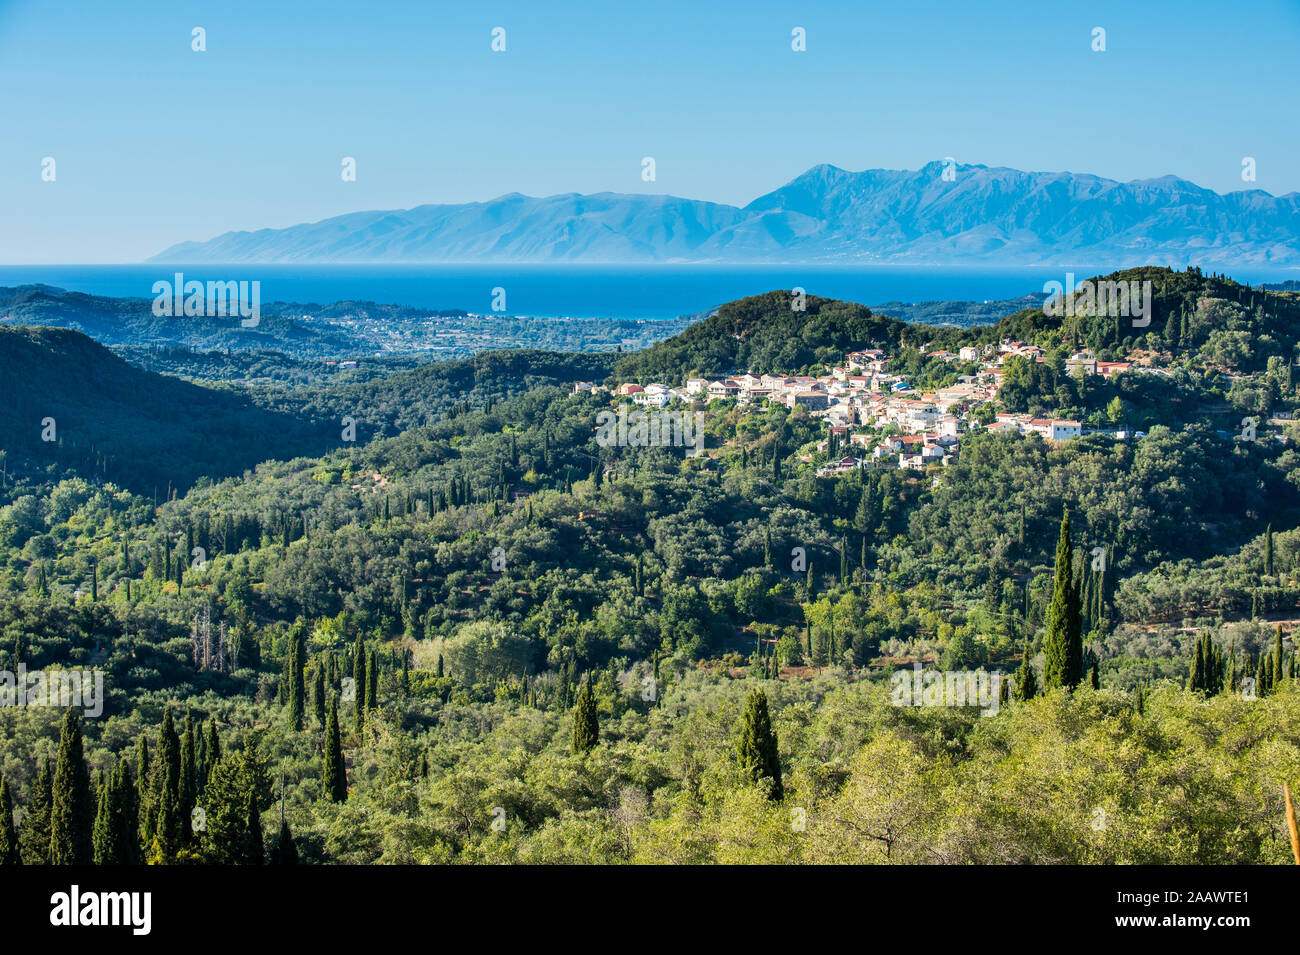 Angolo di alta vista del villaggio di montagna contro gancio cielo durante la giornata di sole, Corfu, isole Ionie, Grecia Foto Stock